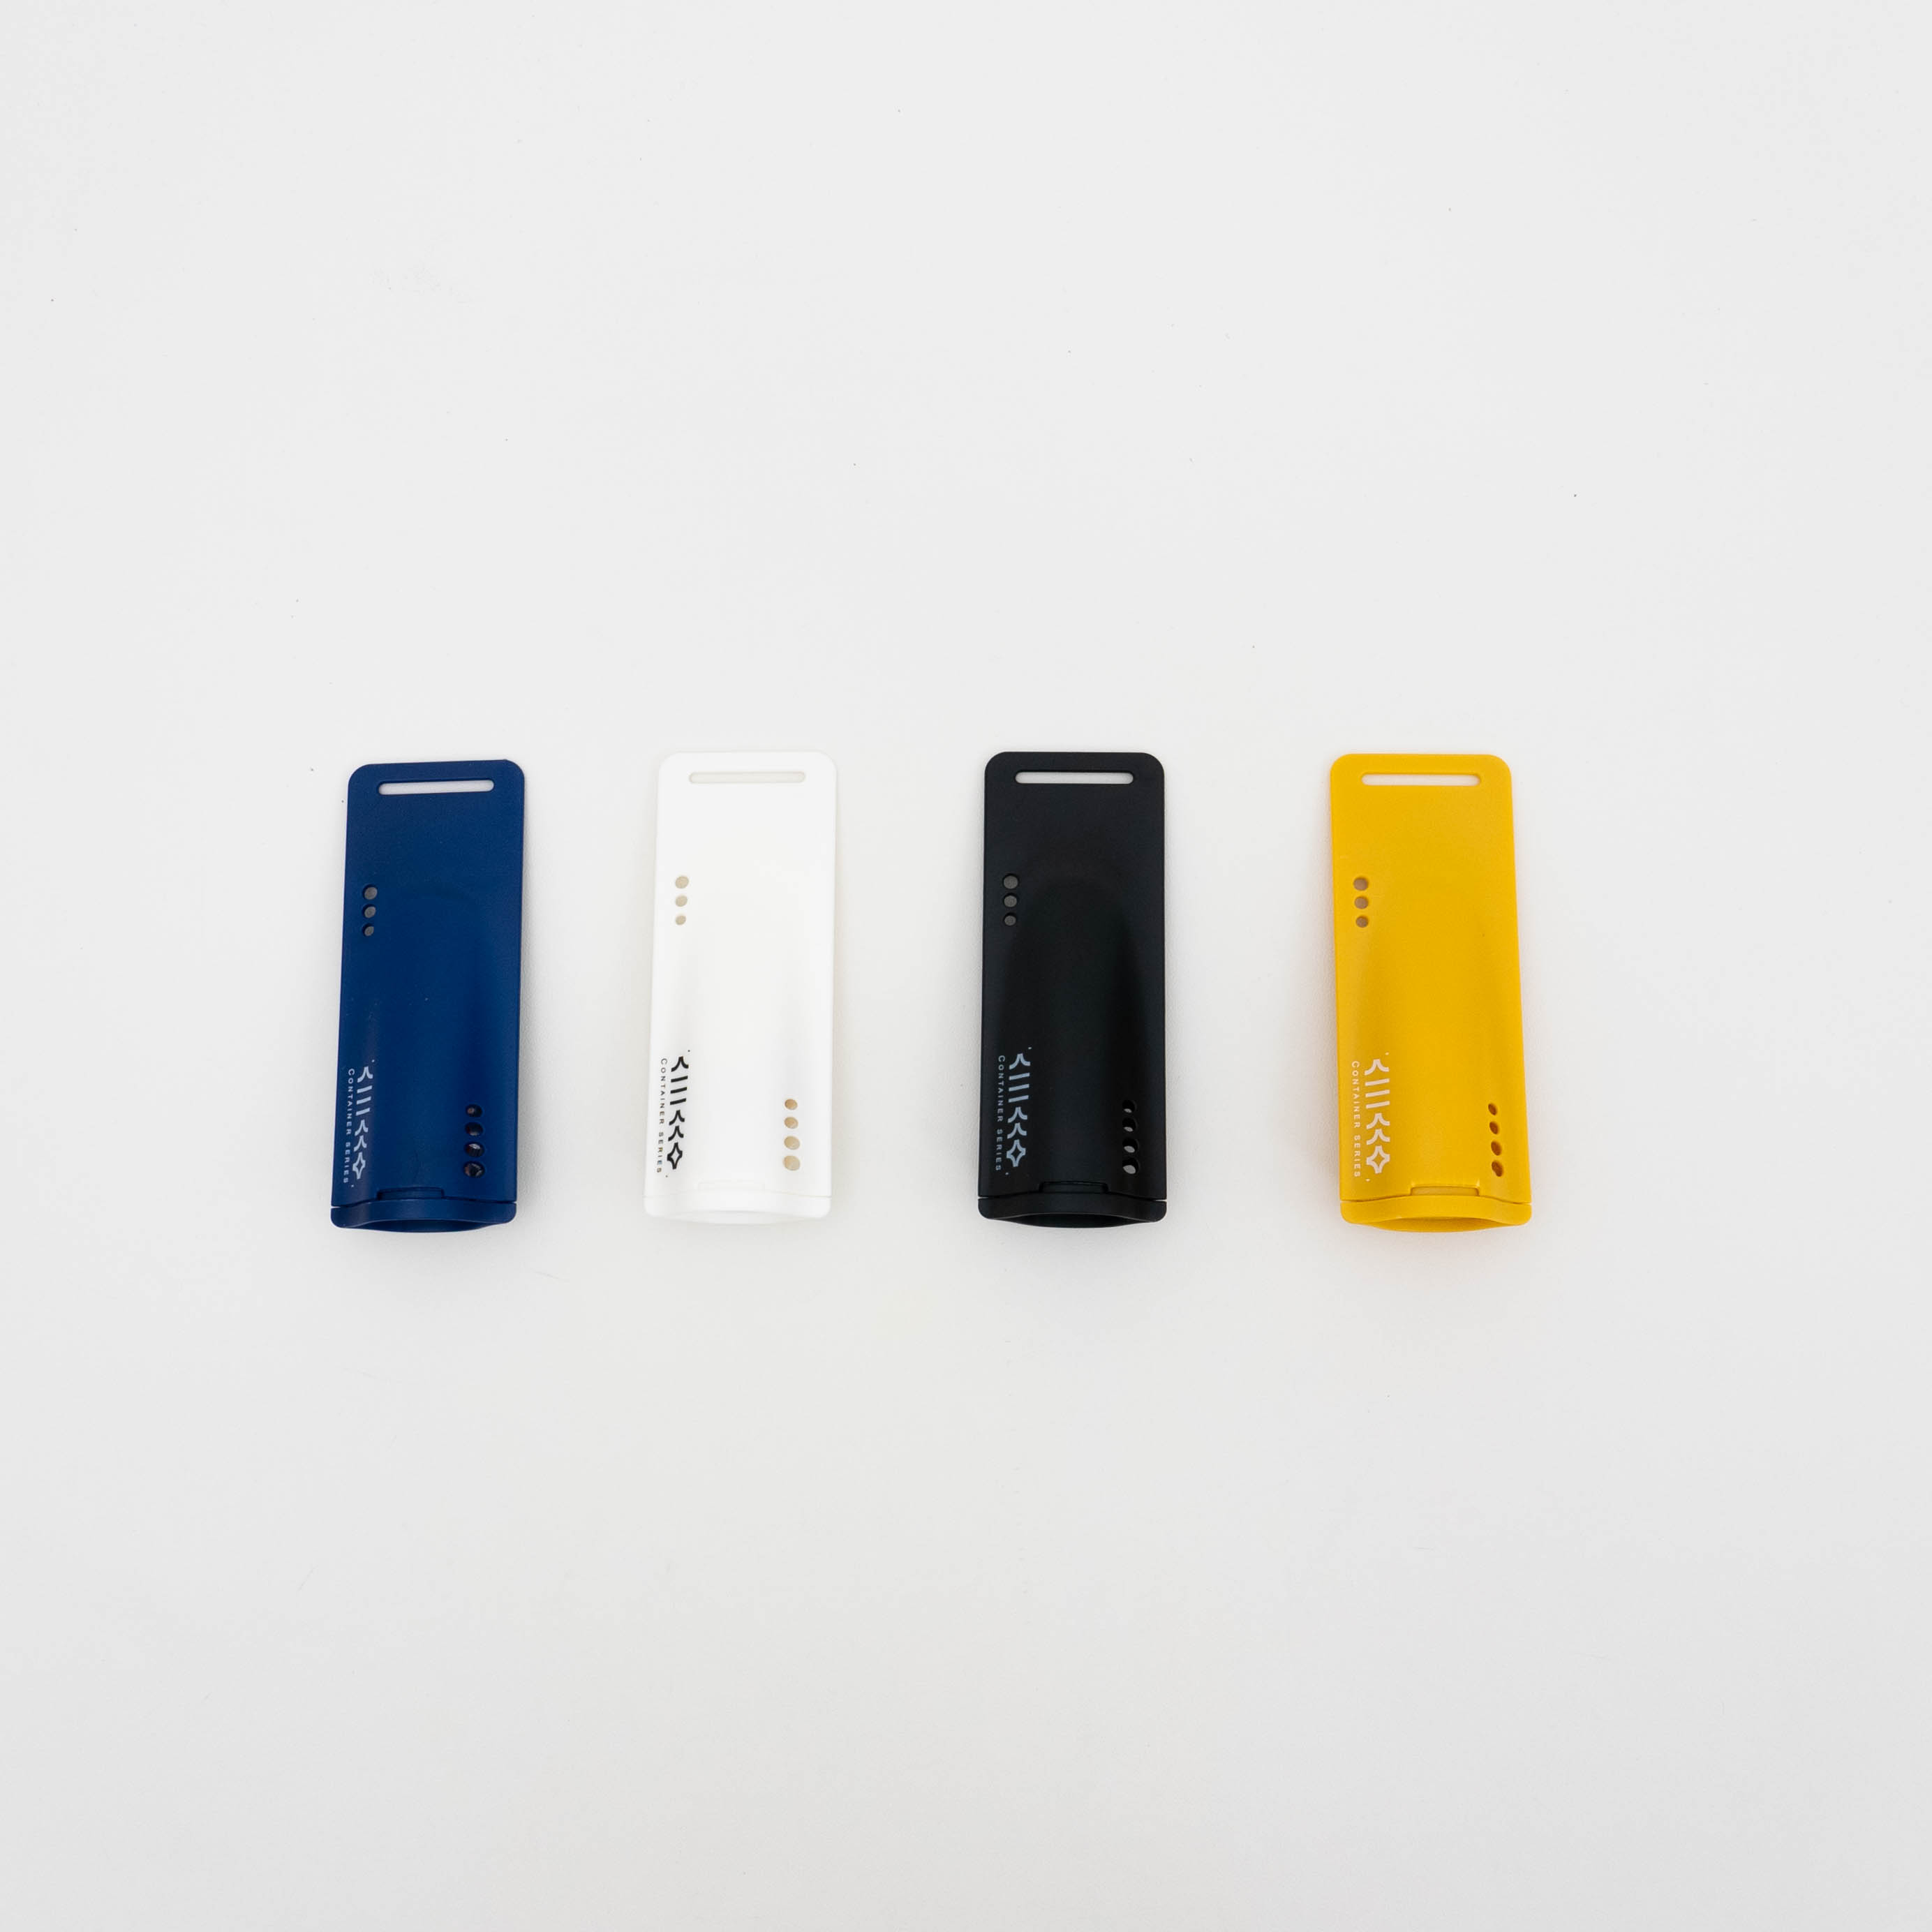 シューズ脱臭除湿・消臭剤の4点セット｜おしゃれでコンパクトなデザインなので、携帯用としても最適|undefined